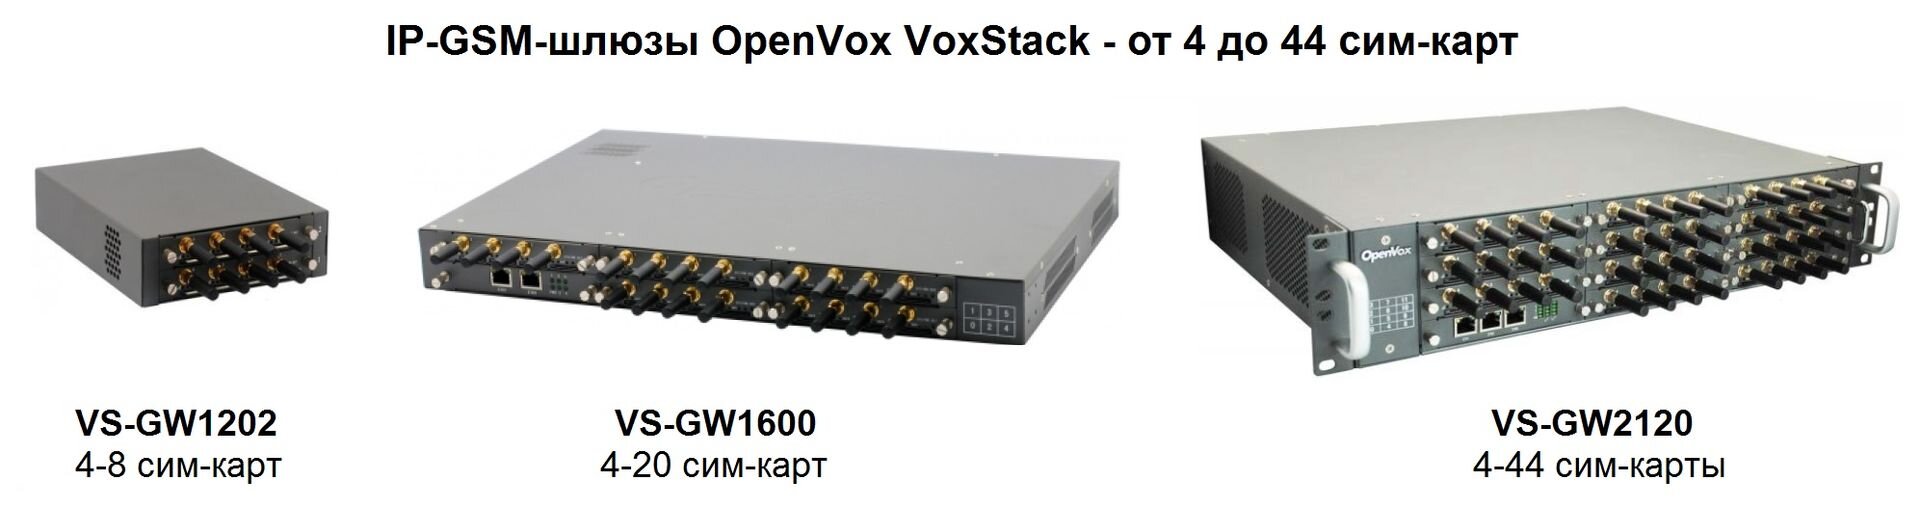 Серия IP-GSM-шлюзов Openvox Voxstack